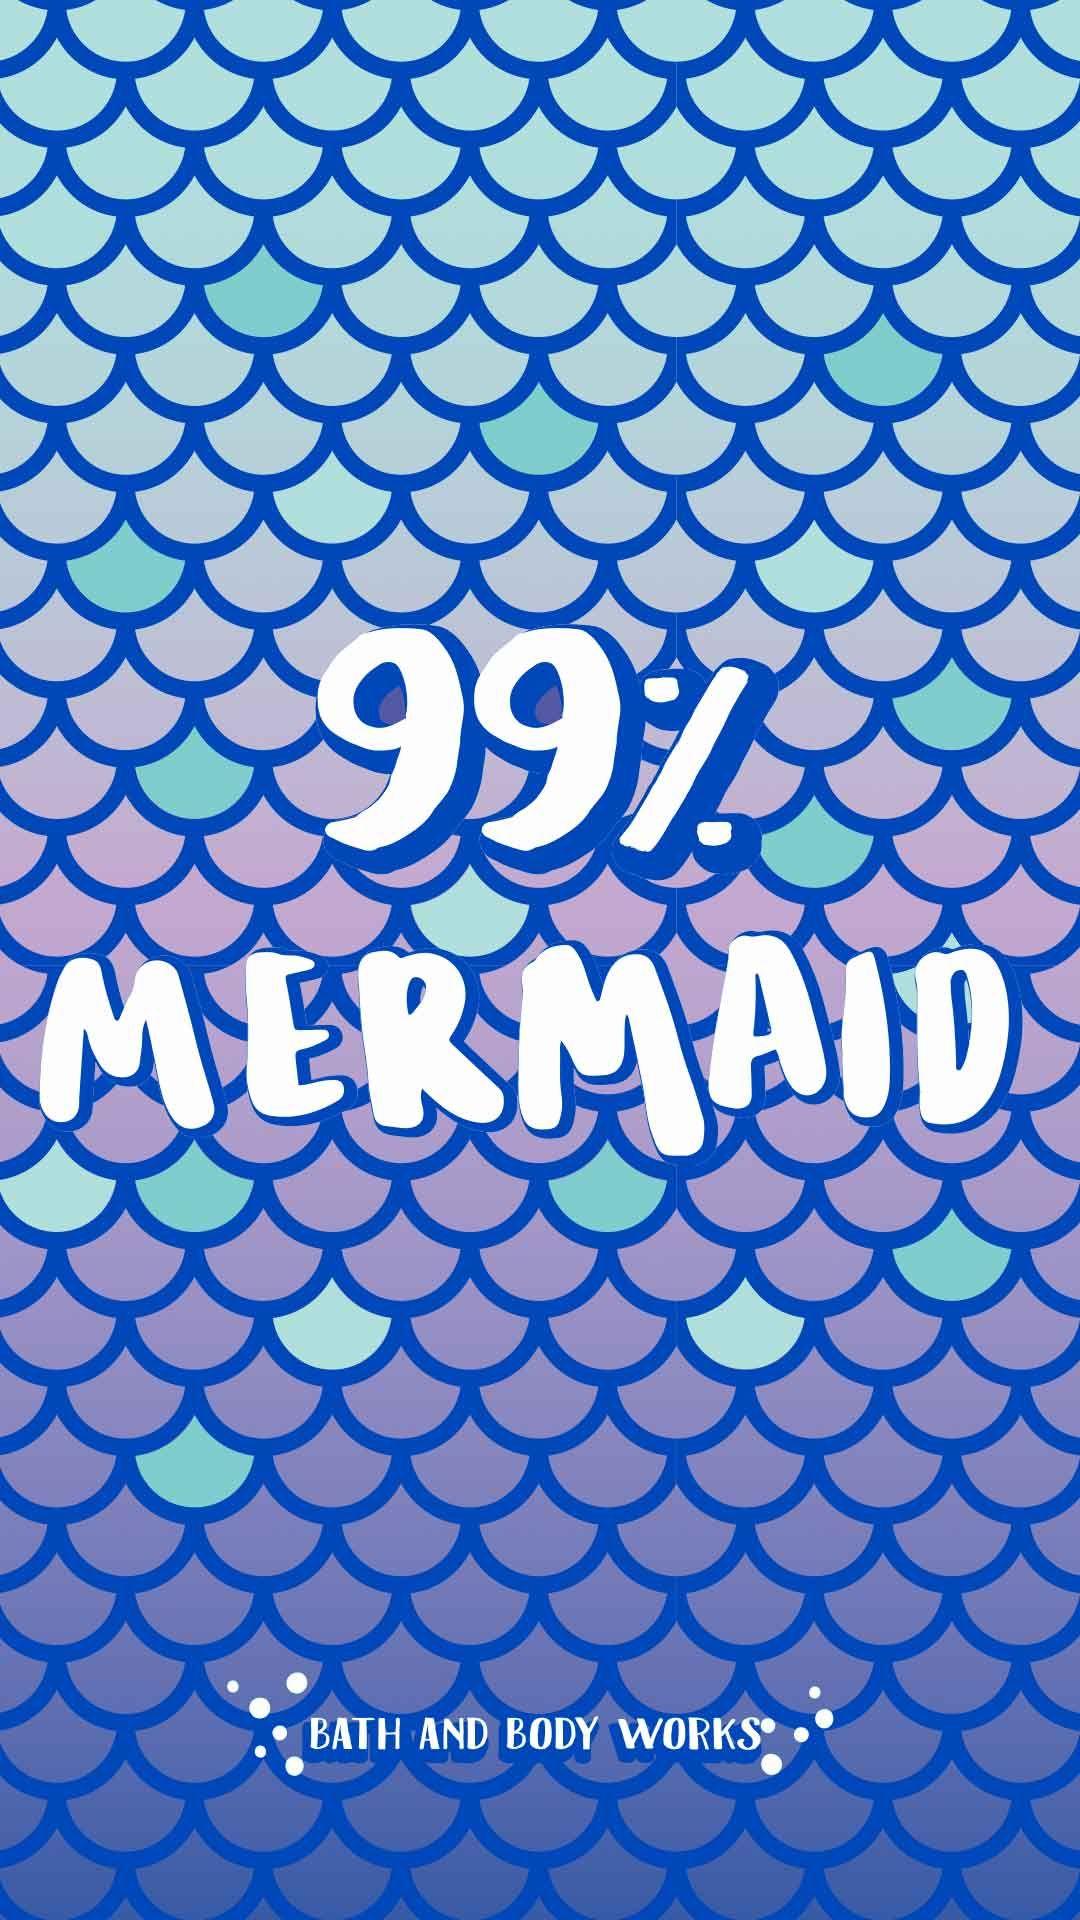 99% Mermaid iPhone Wallpaper. Words wallpaper, Mermaid